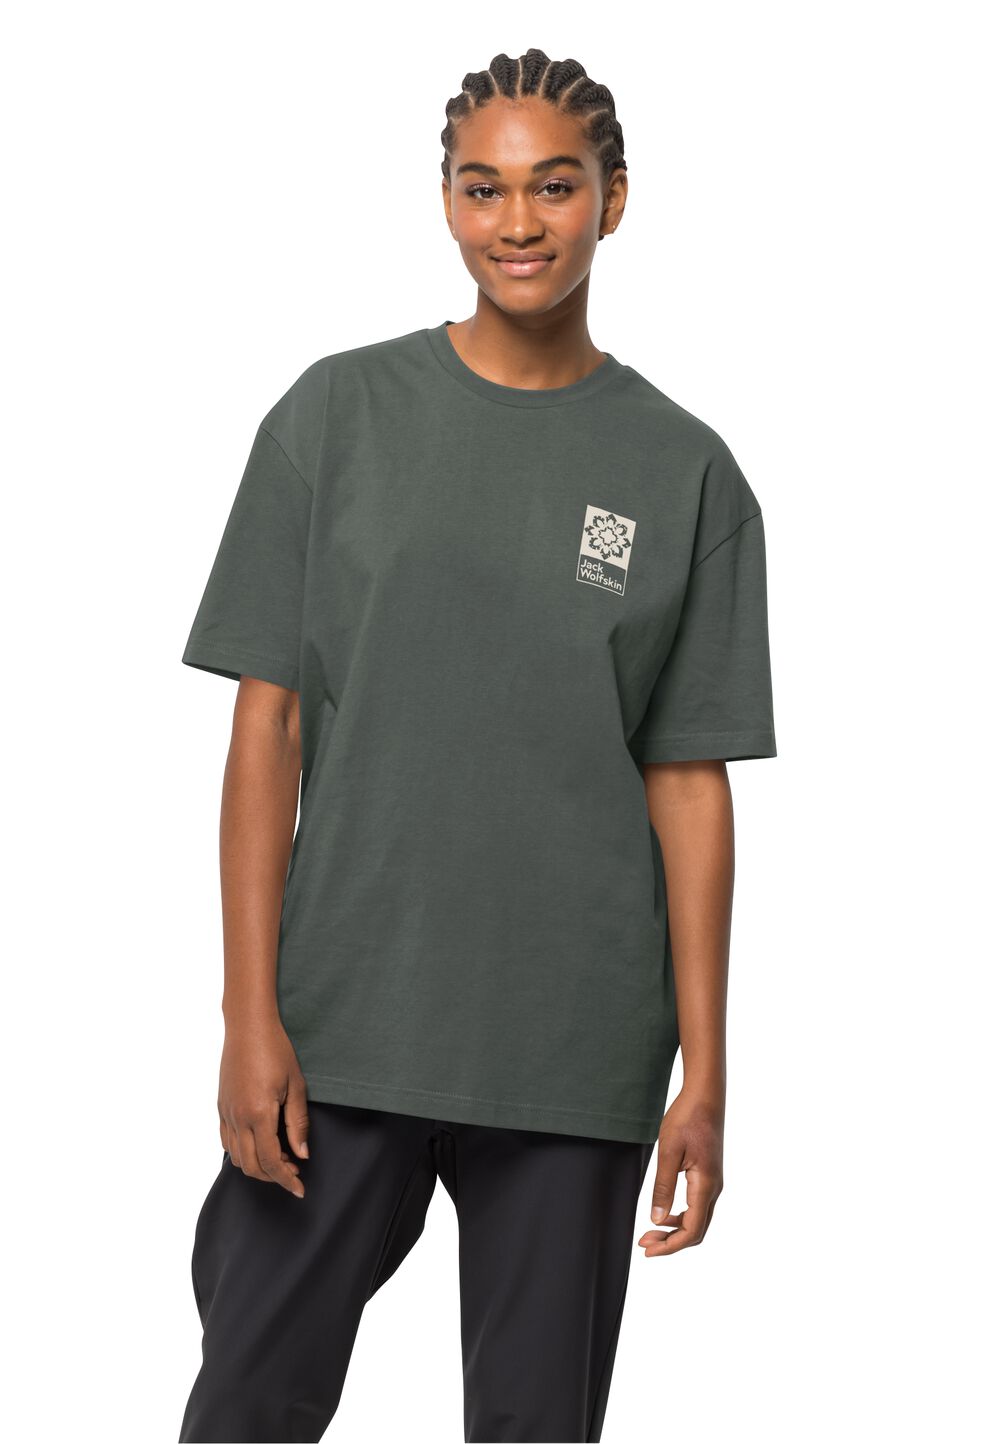 Jack Wolfskin Unisex T-shirt aus Bio-Baumwolle Eschenheimer Back T-Shirt L grau slate green von Jack Wolfskin